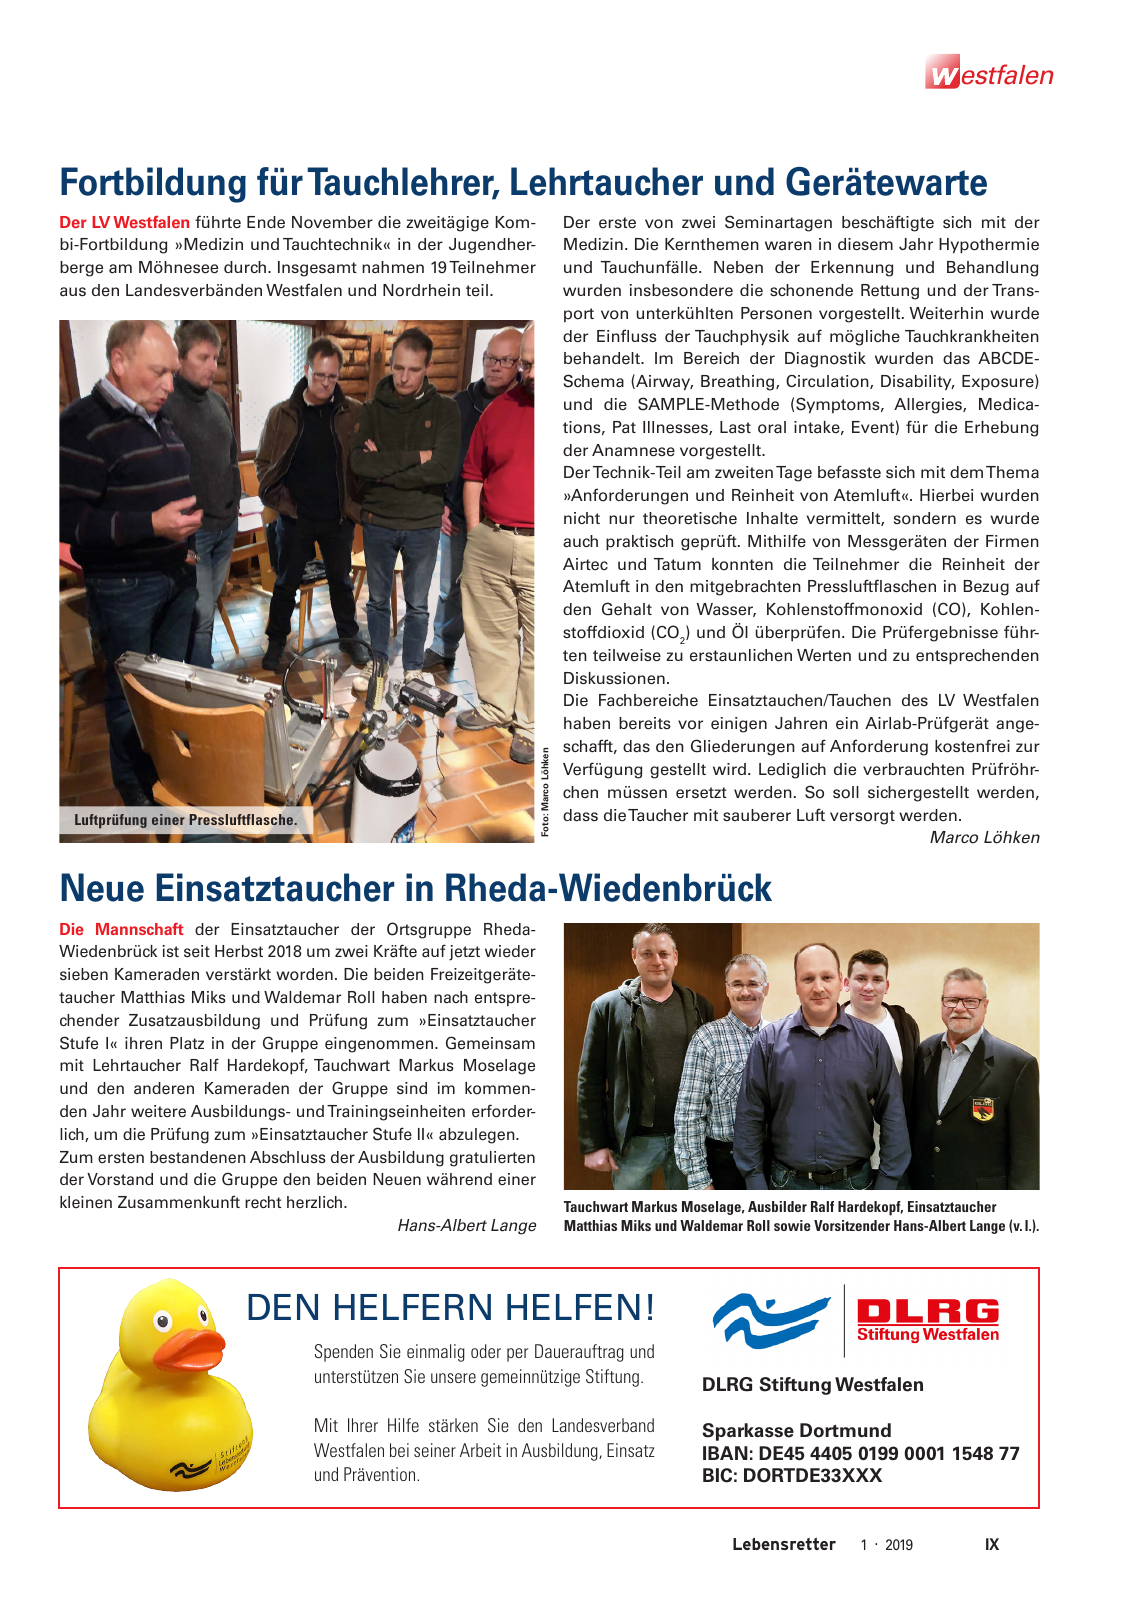 Vorschau Lebensretter 1/2019 –  Regionalausgabe Westfalen Seite 11